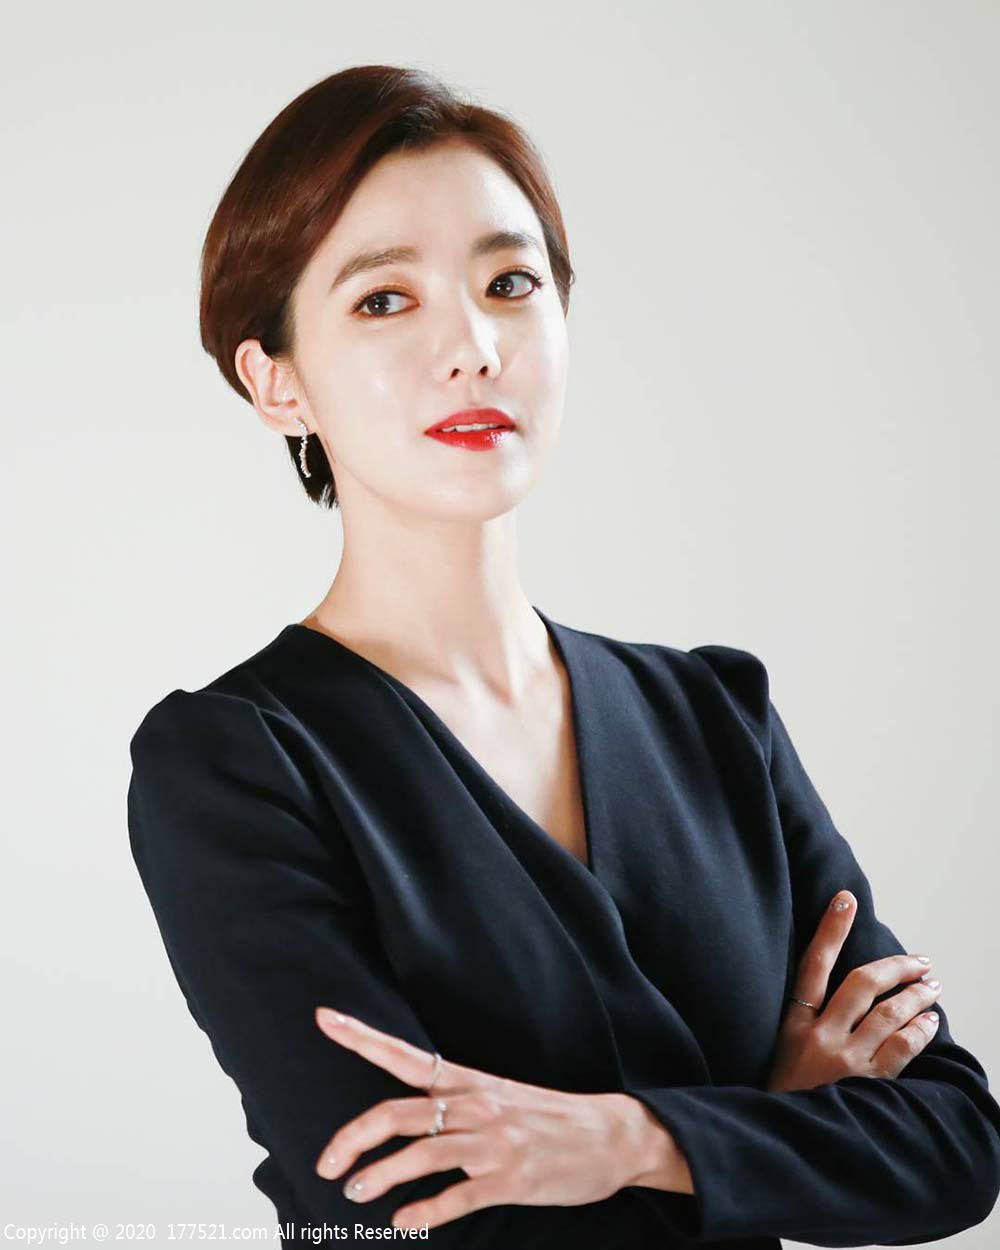 李素妍( 이소연, Lee So Yeon)人物介绍生涯评价完整版